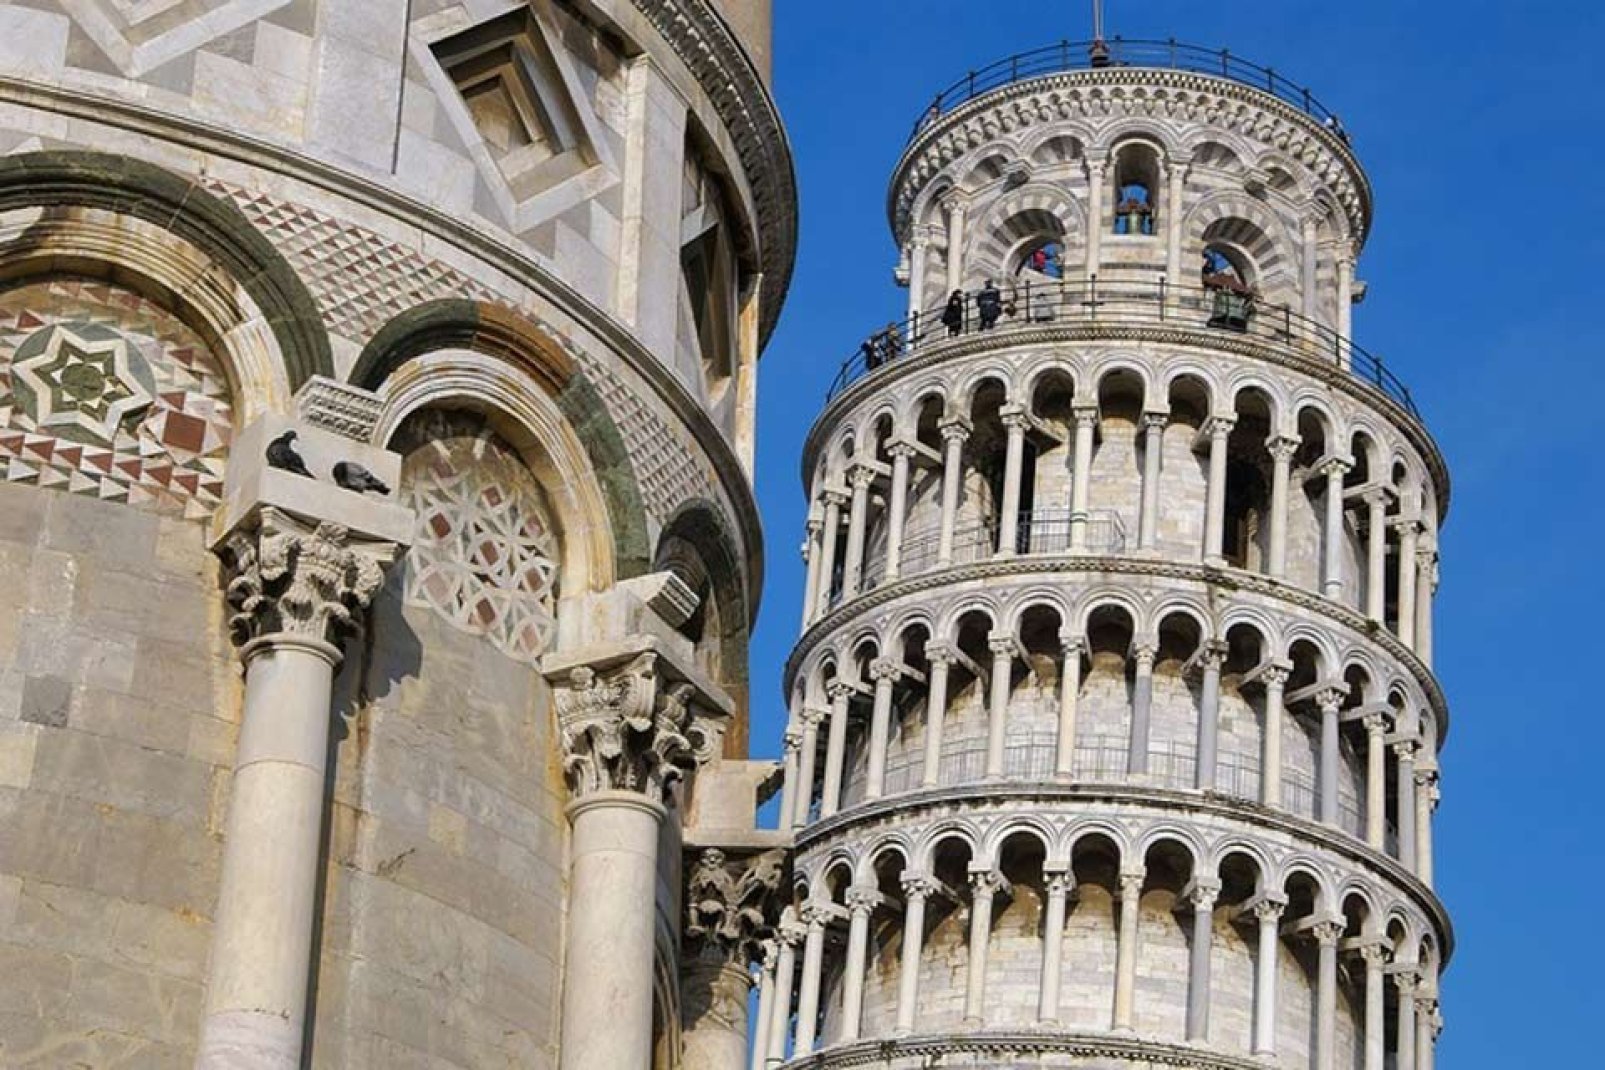 El campanario de Pisa, conocido como la Torre de Pisa, es famoso en el mundo entero gracias a su obvia inclinación.